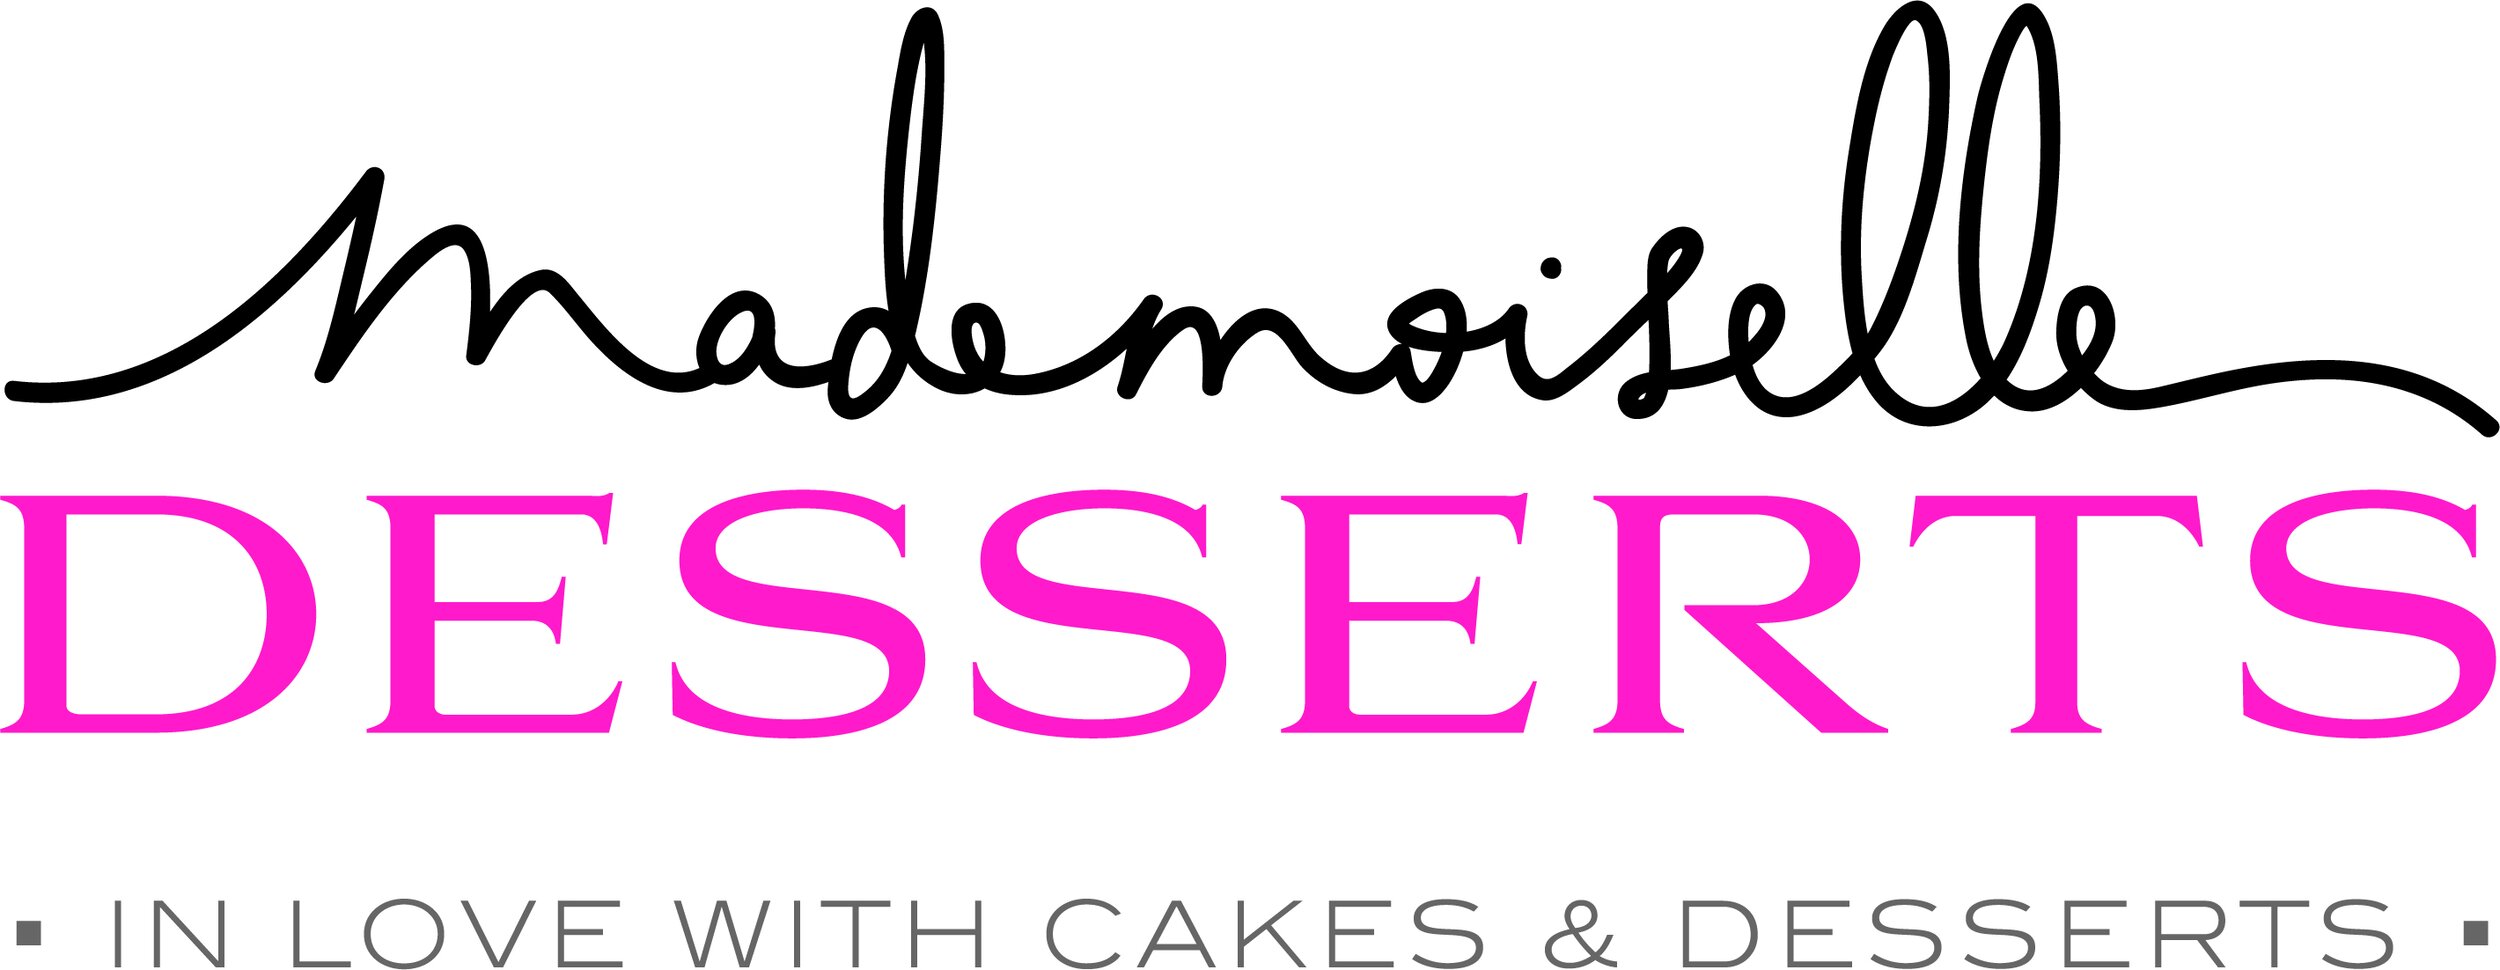 mademoiselle-desserts-logo-uk.jpg